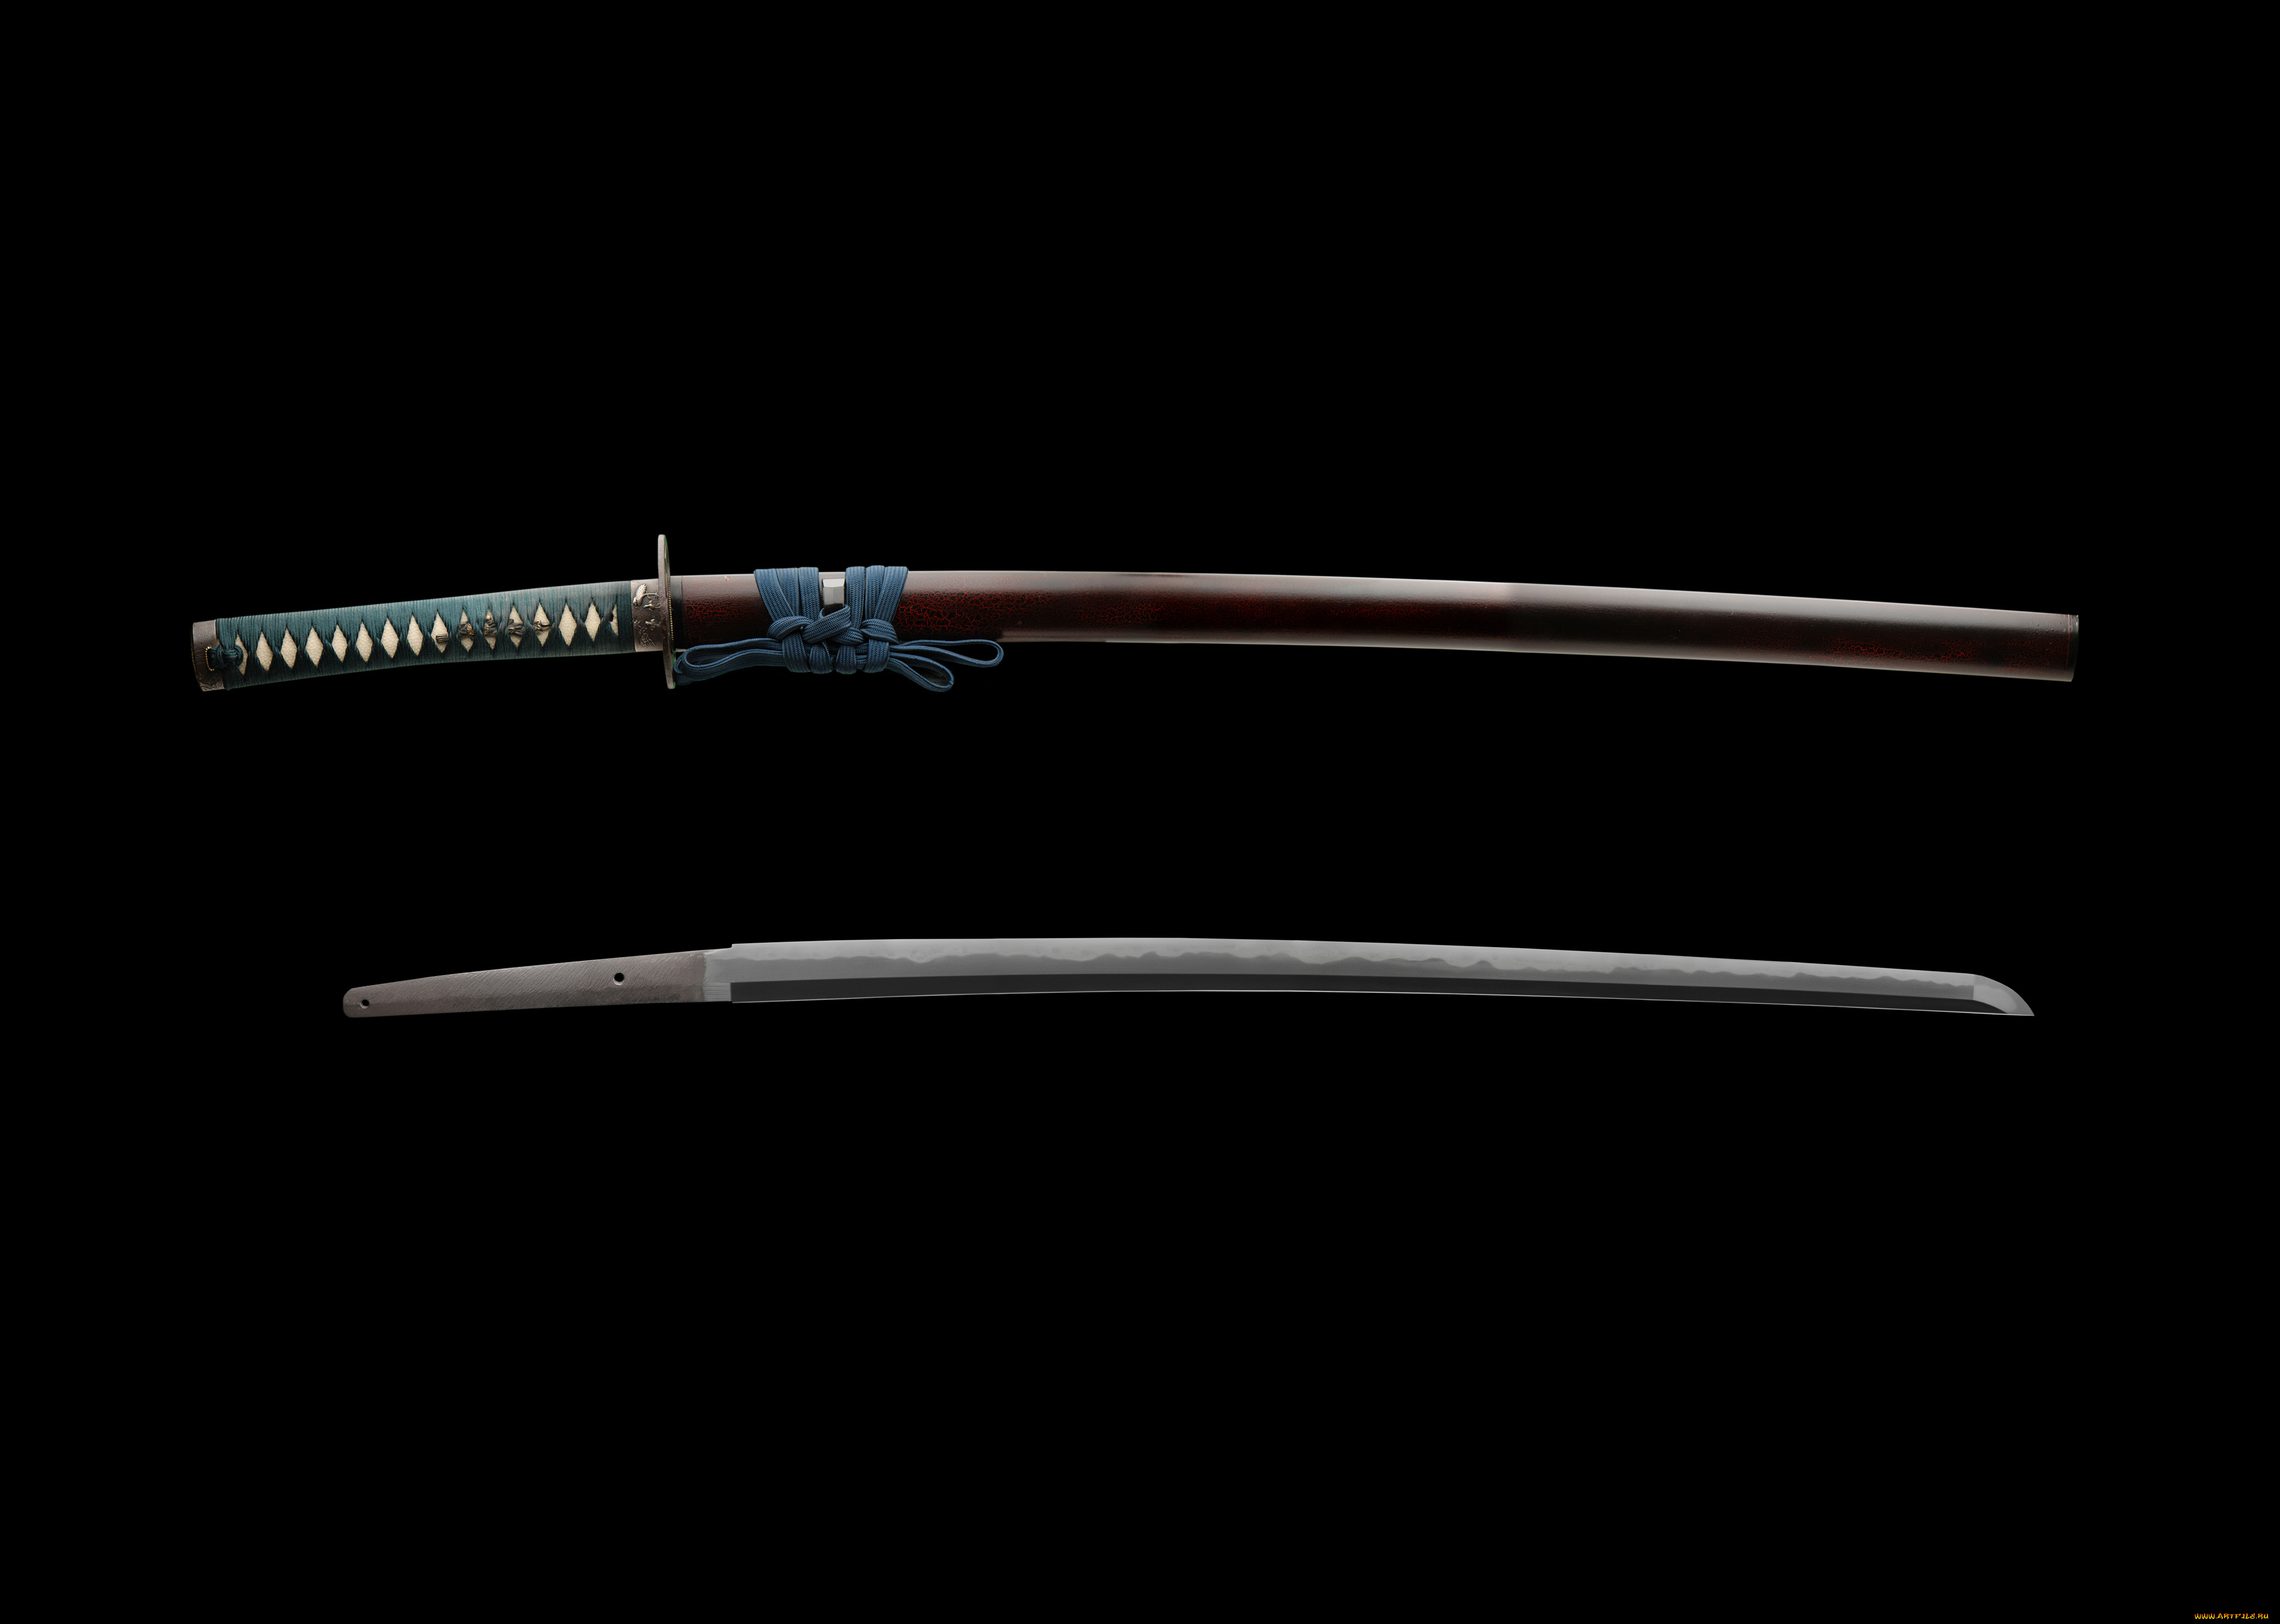 оружие, холодное, самурай, меч, катана, япония